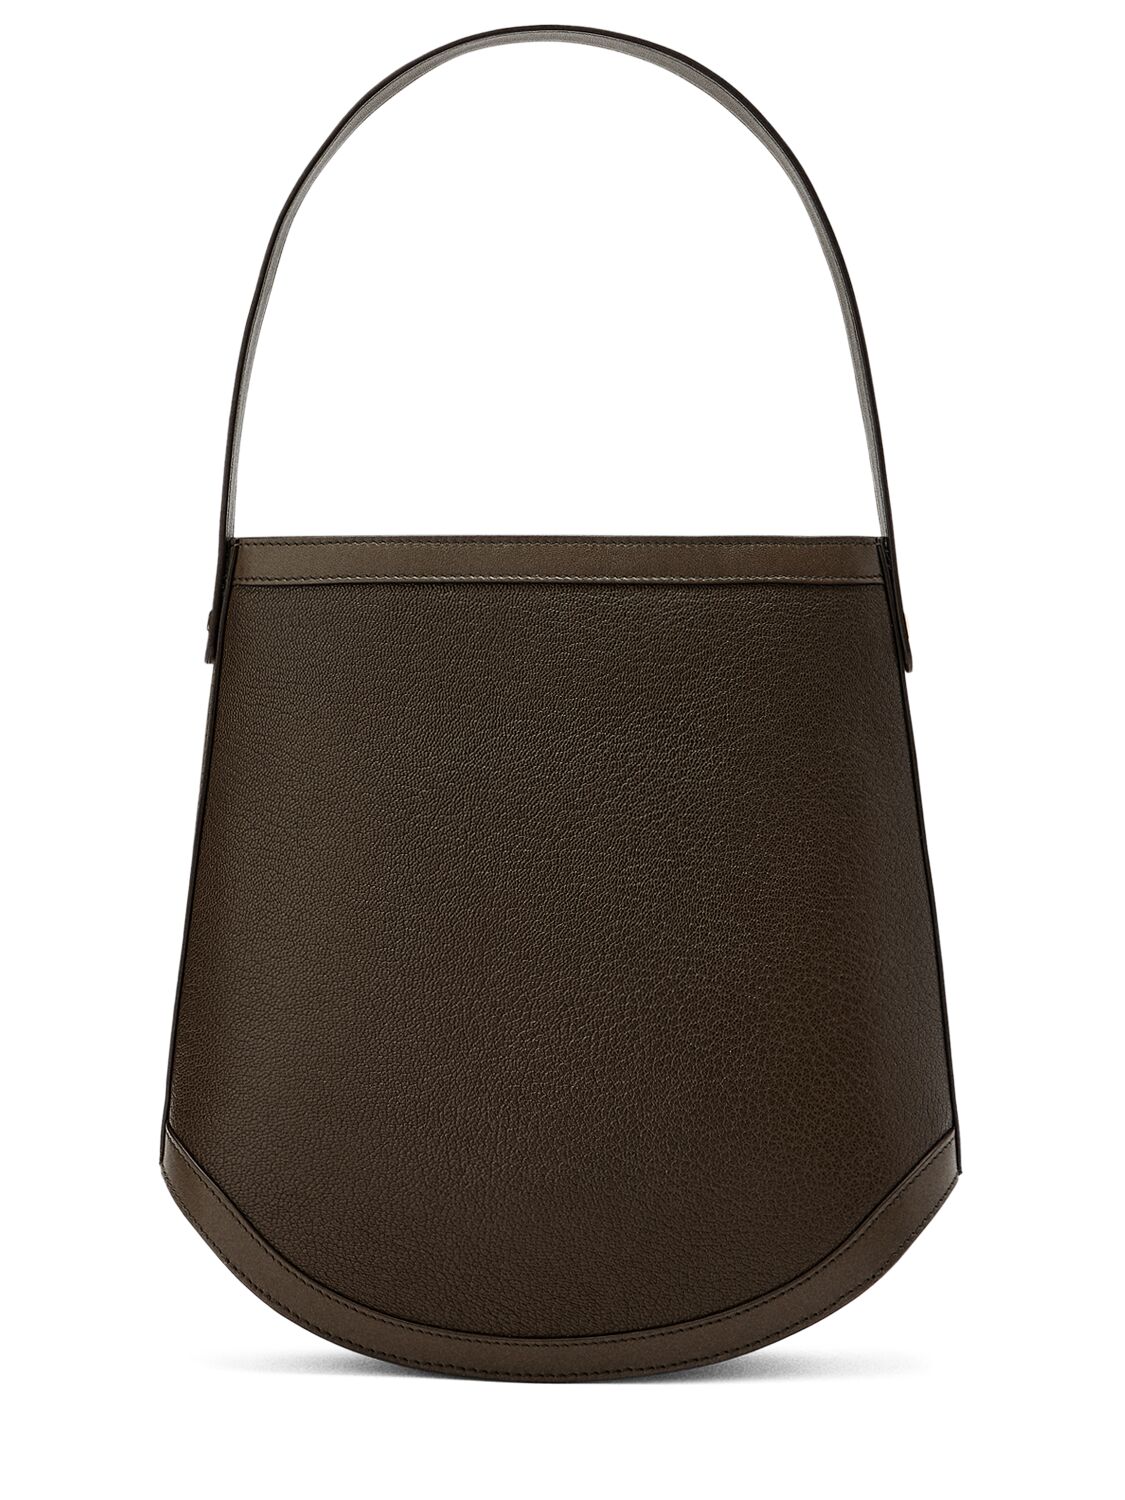 Image of The Large Bucket Leather Shoulder Bag